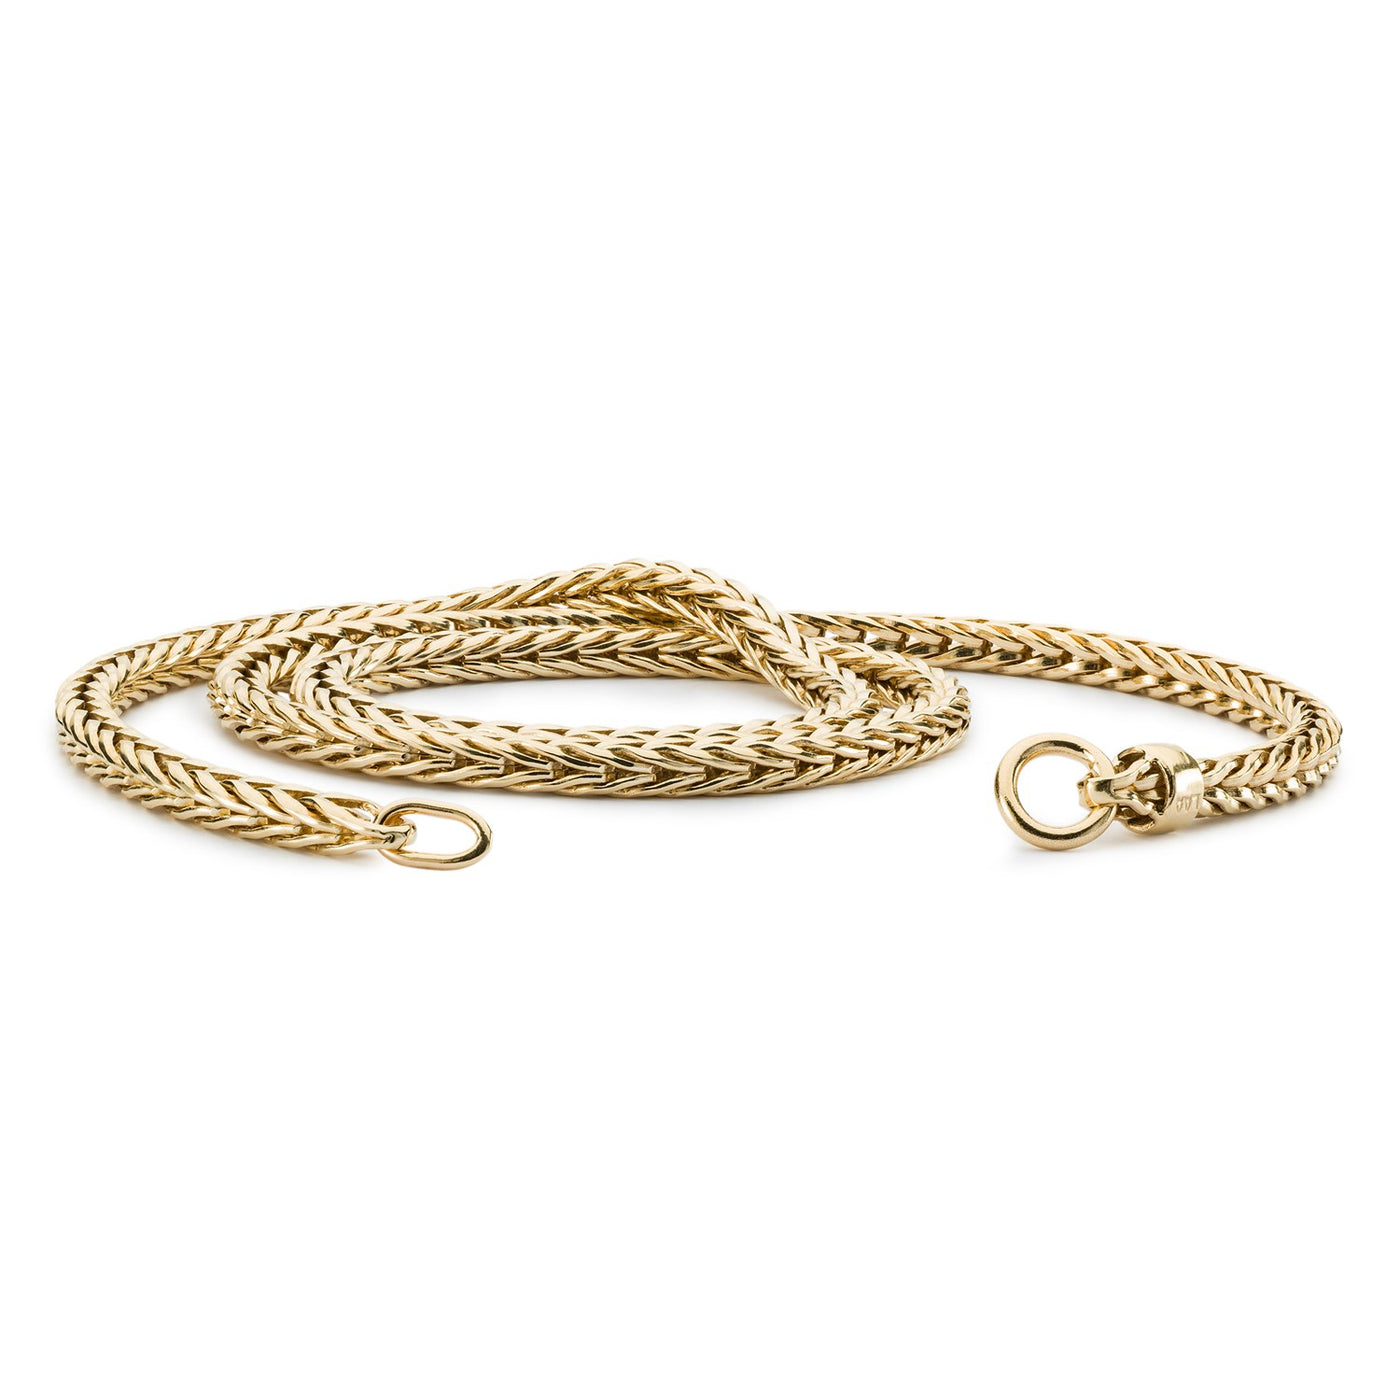 14K Guldhalskæde, der har en luksuriøs kæde lavet af 14 karat guld, perfekt til at tilføje et strejf af raffinement og luksus til din smykkesamling. Låsen medfølger ikke.